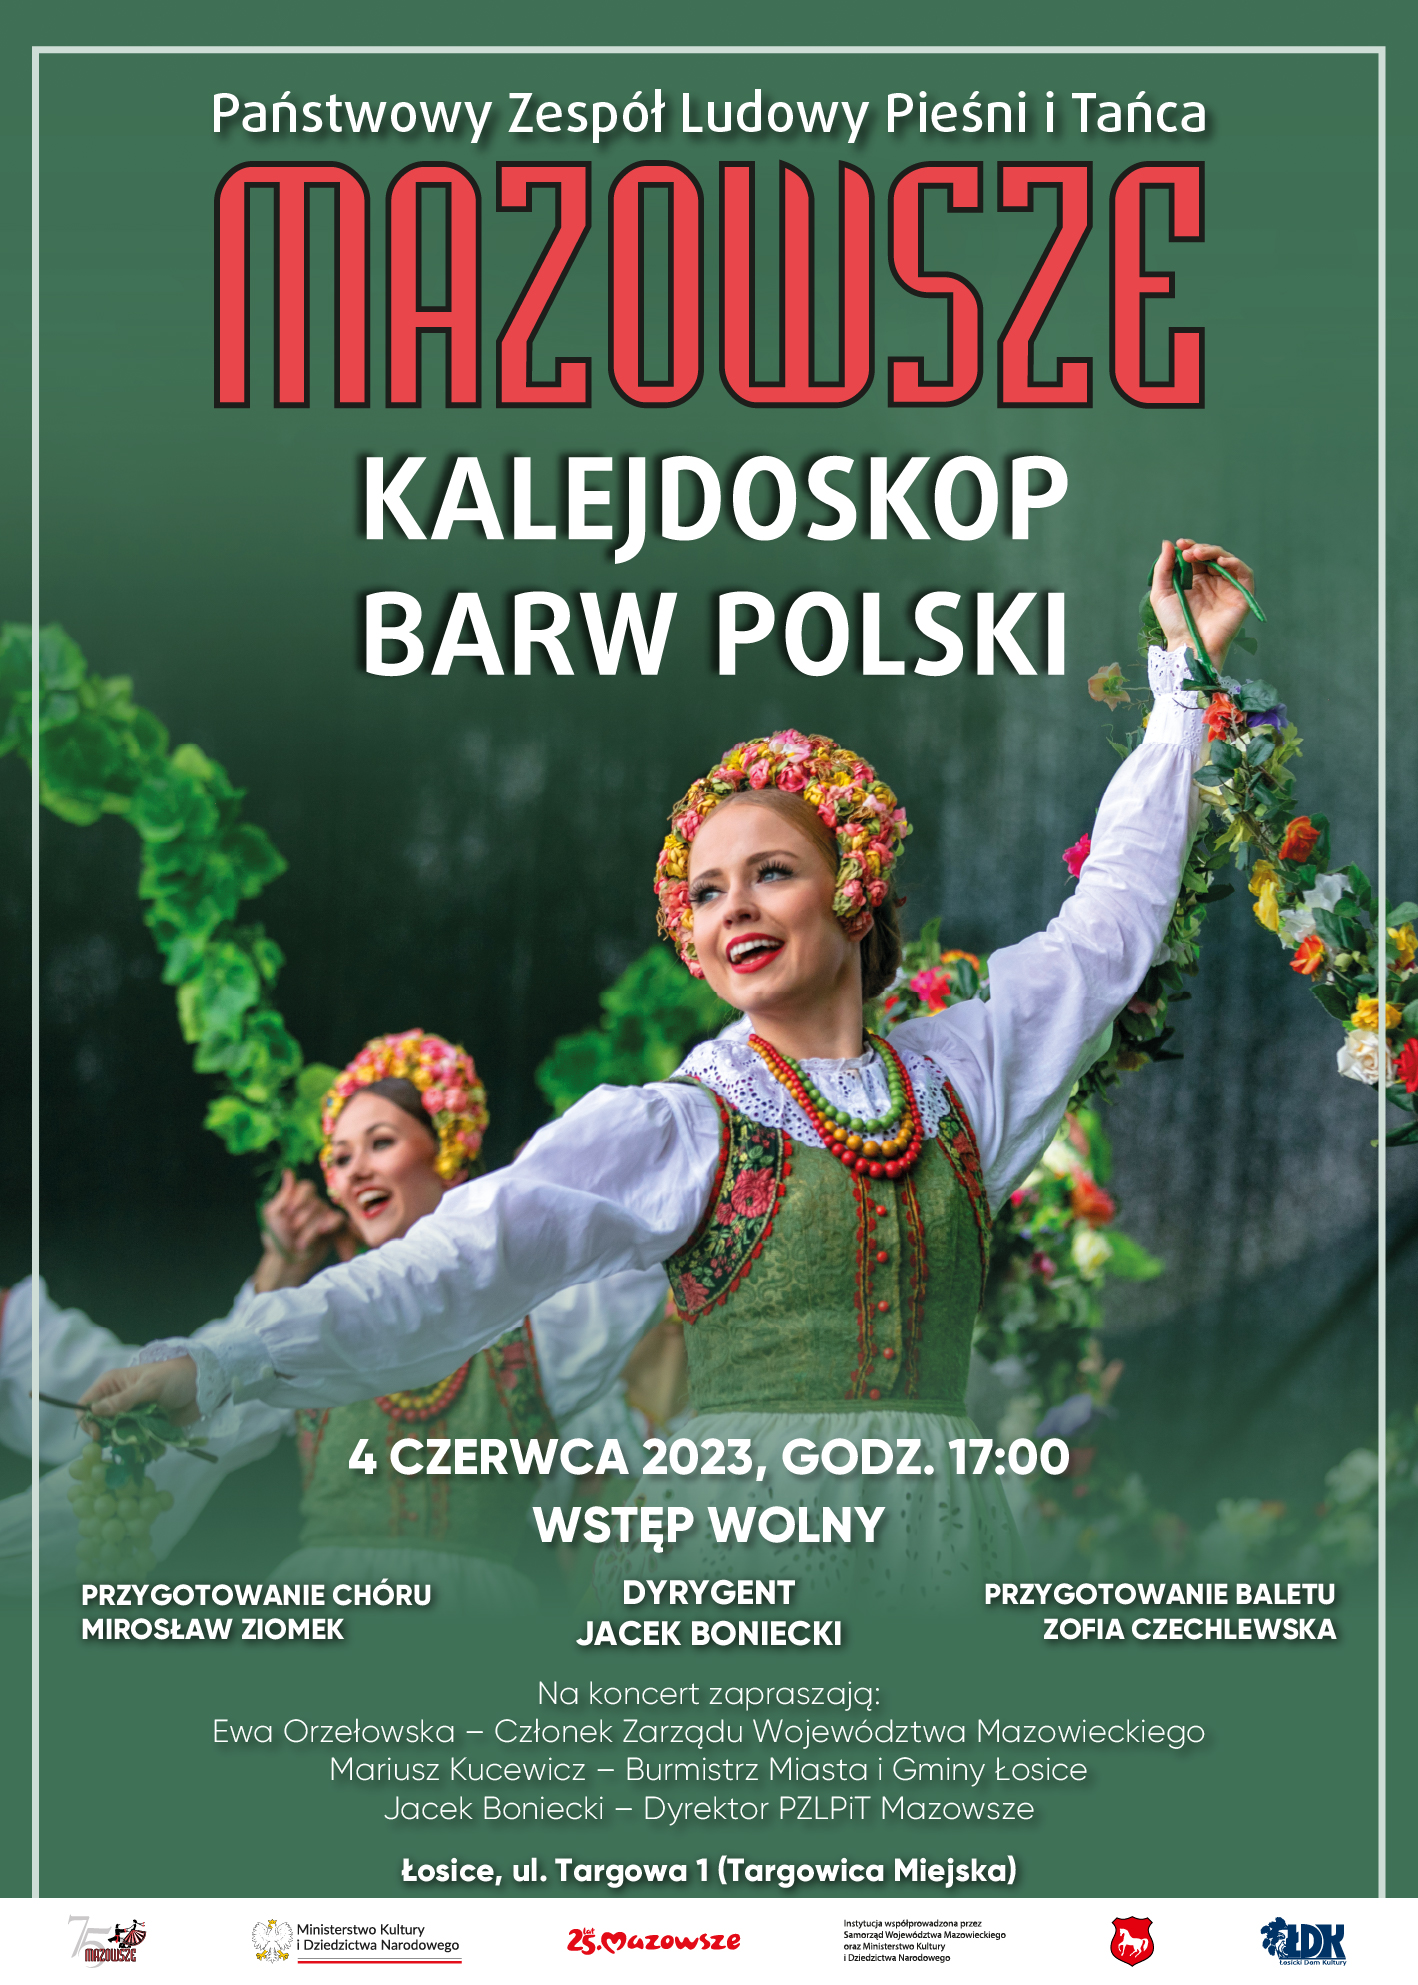 Plakat promujący koncert Mazowsza - Kalejdoskop Barw Polski